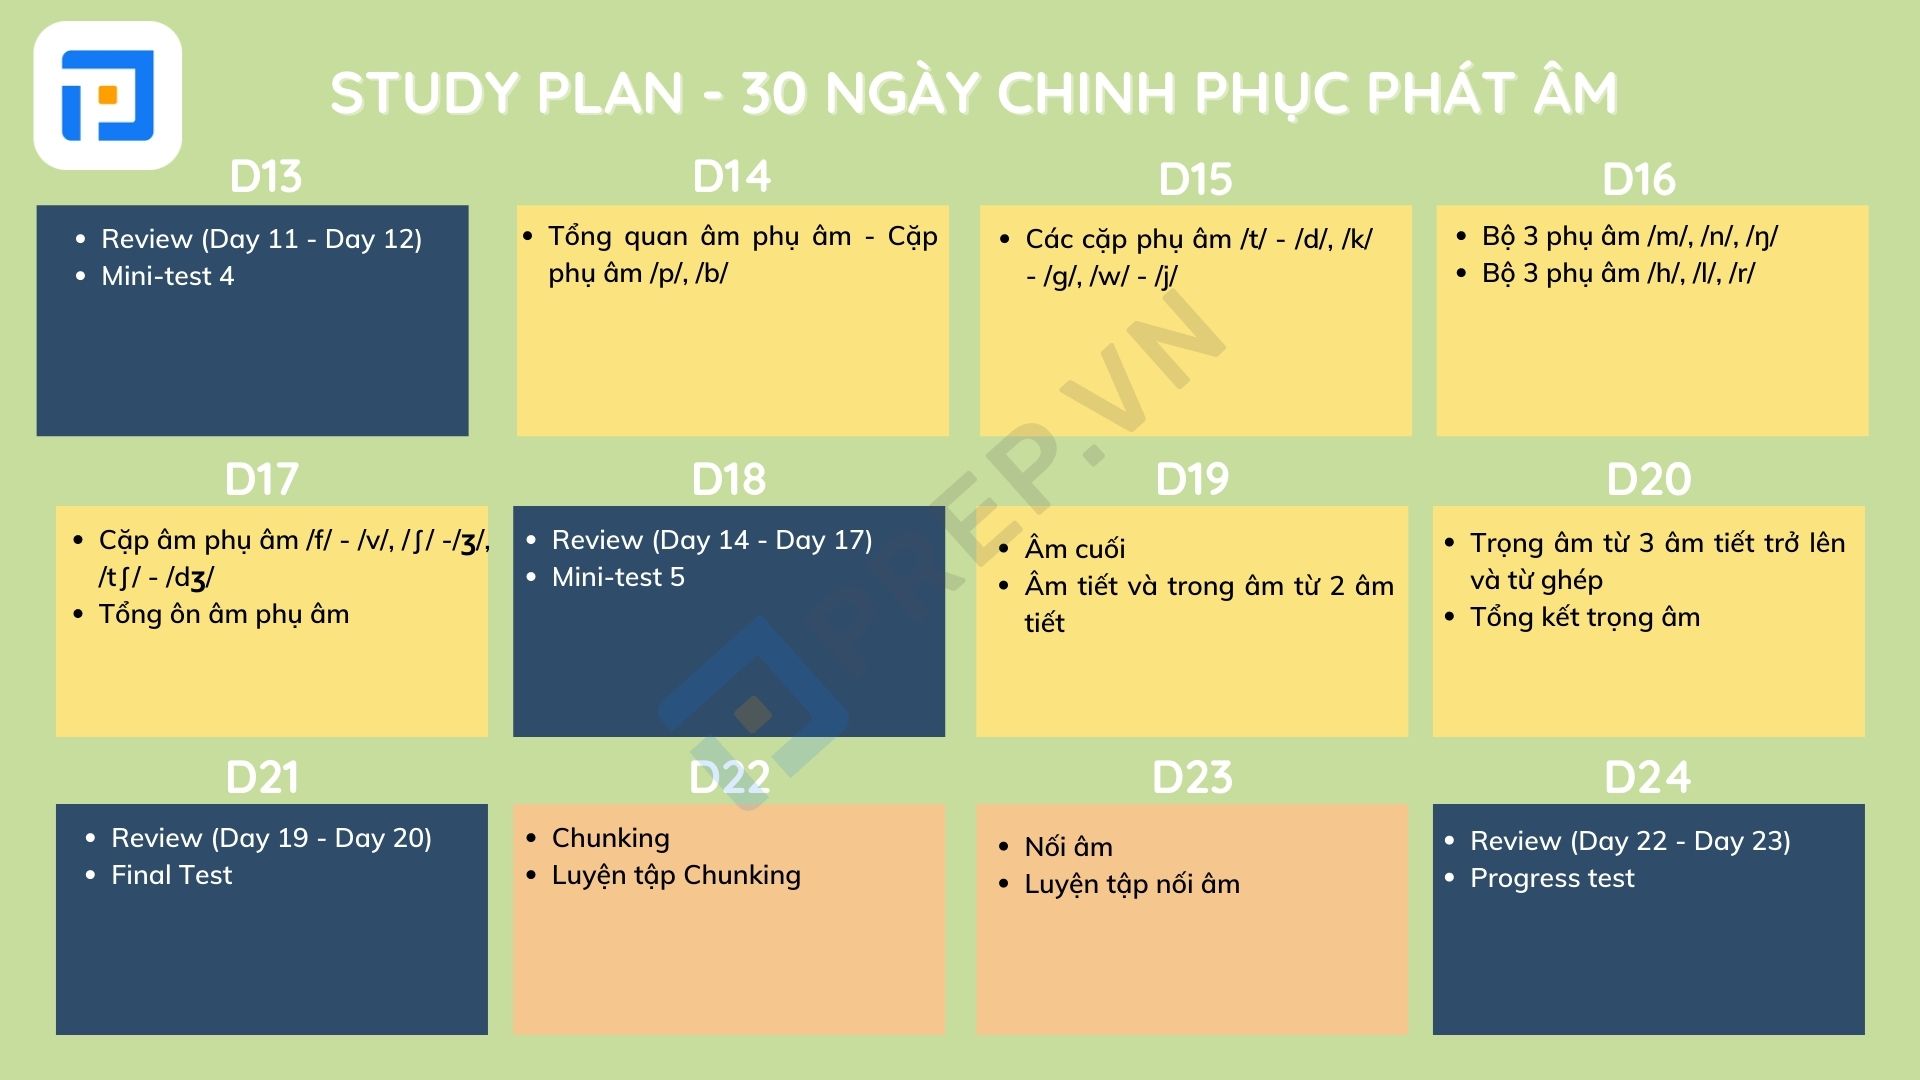 Study Plan - Lộ trình học phát âm tiếng Anh trong vòng 30 ngày